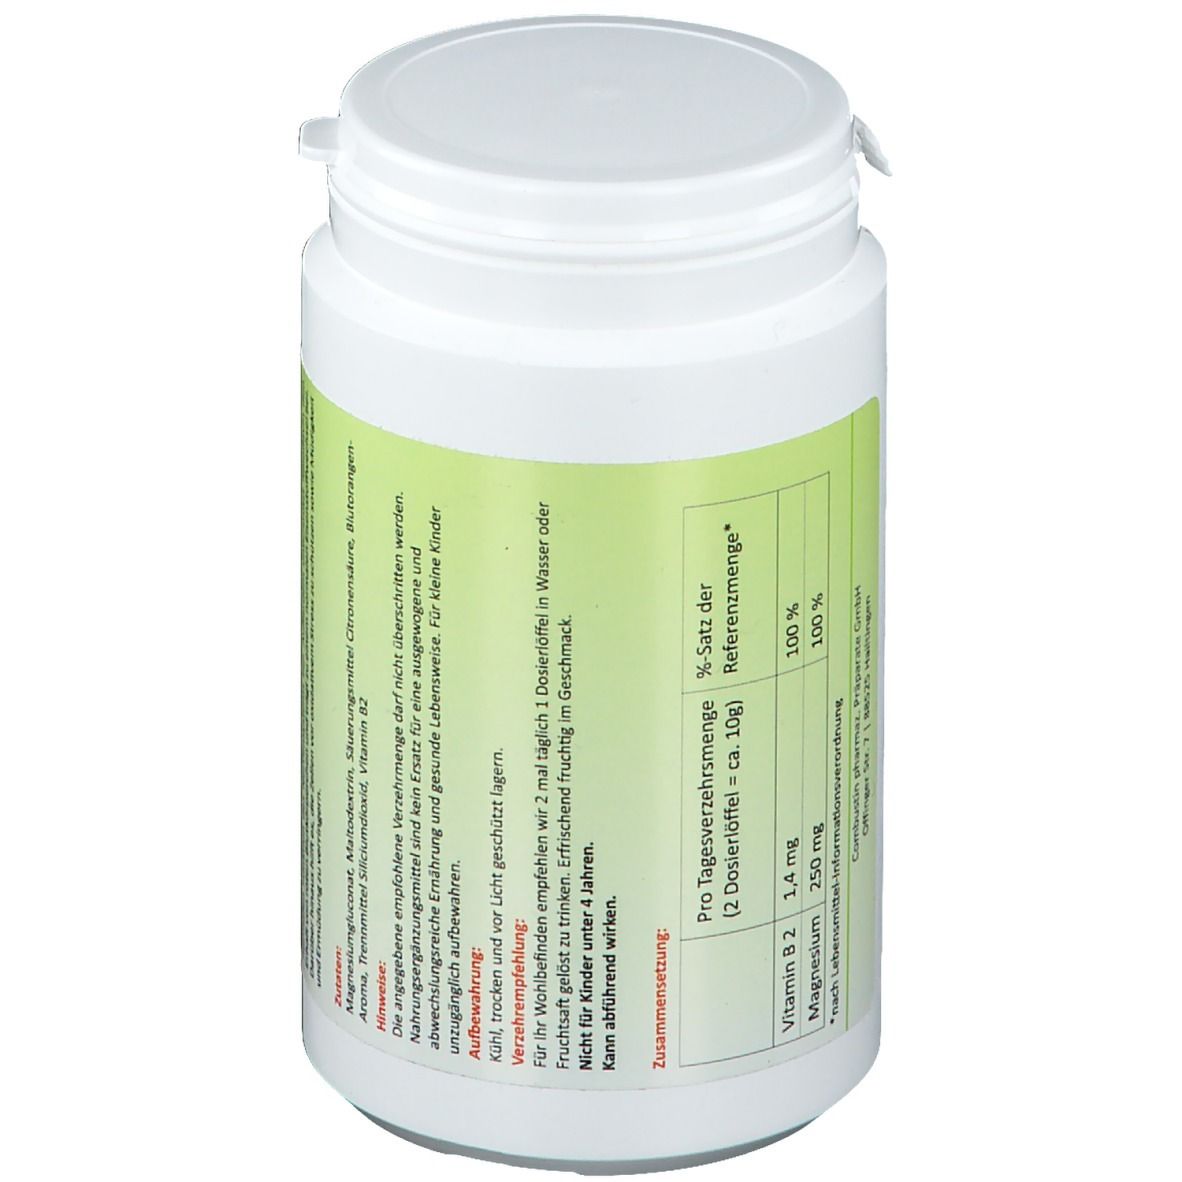 Presselin® Magnesium-Mineral